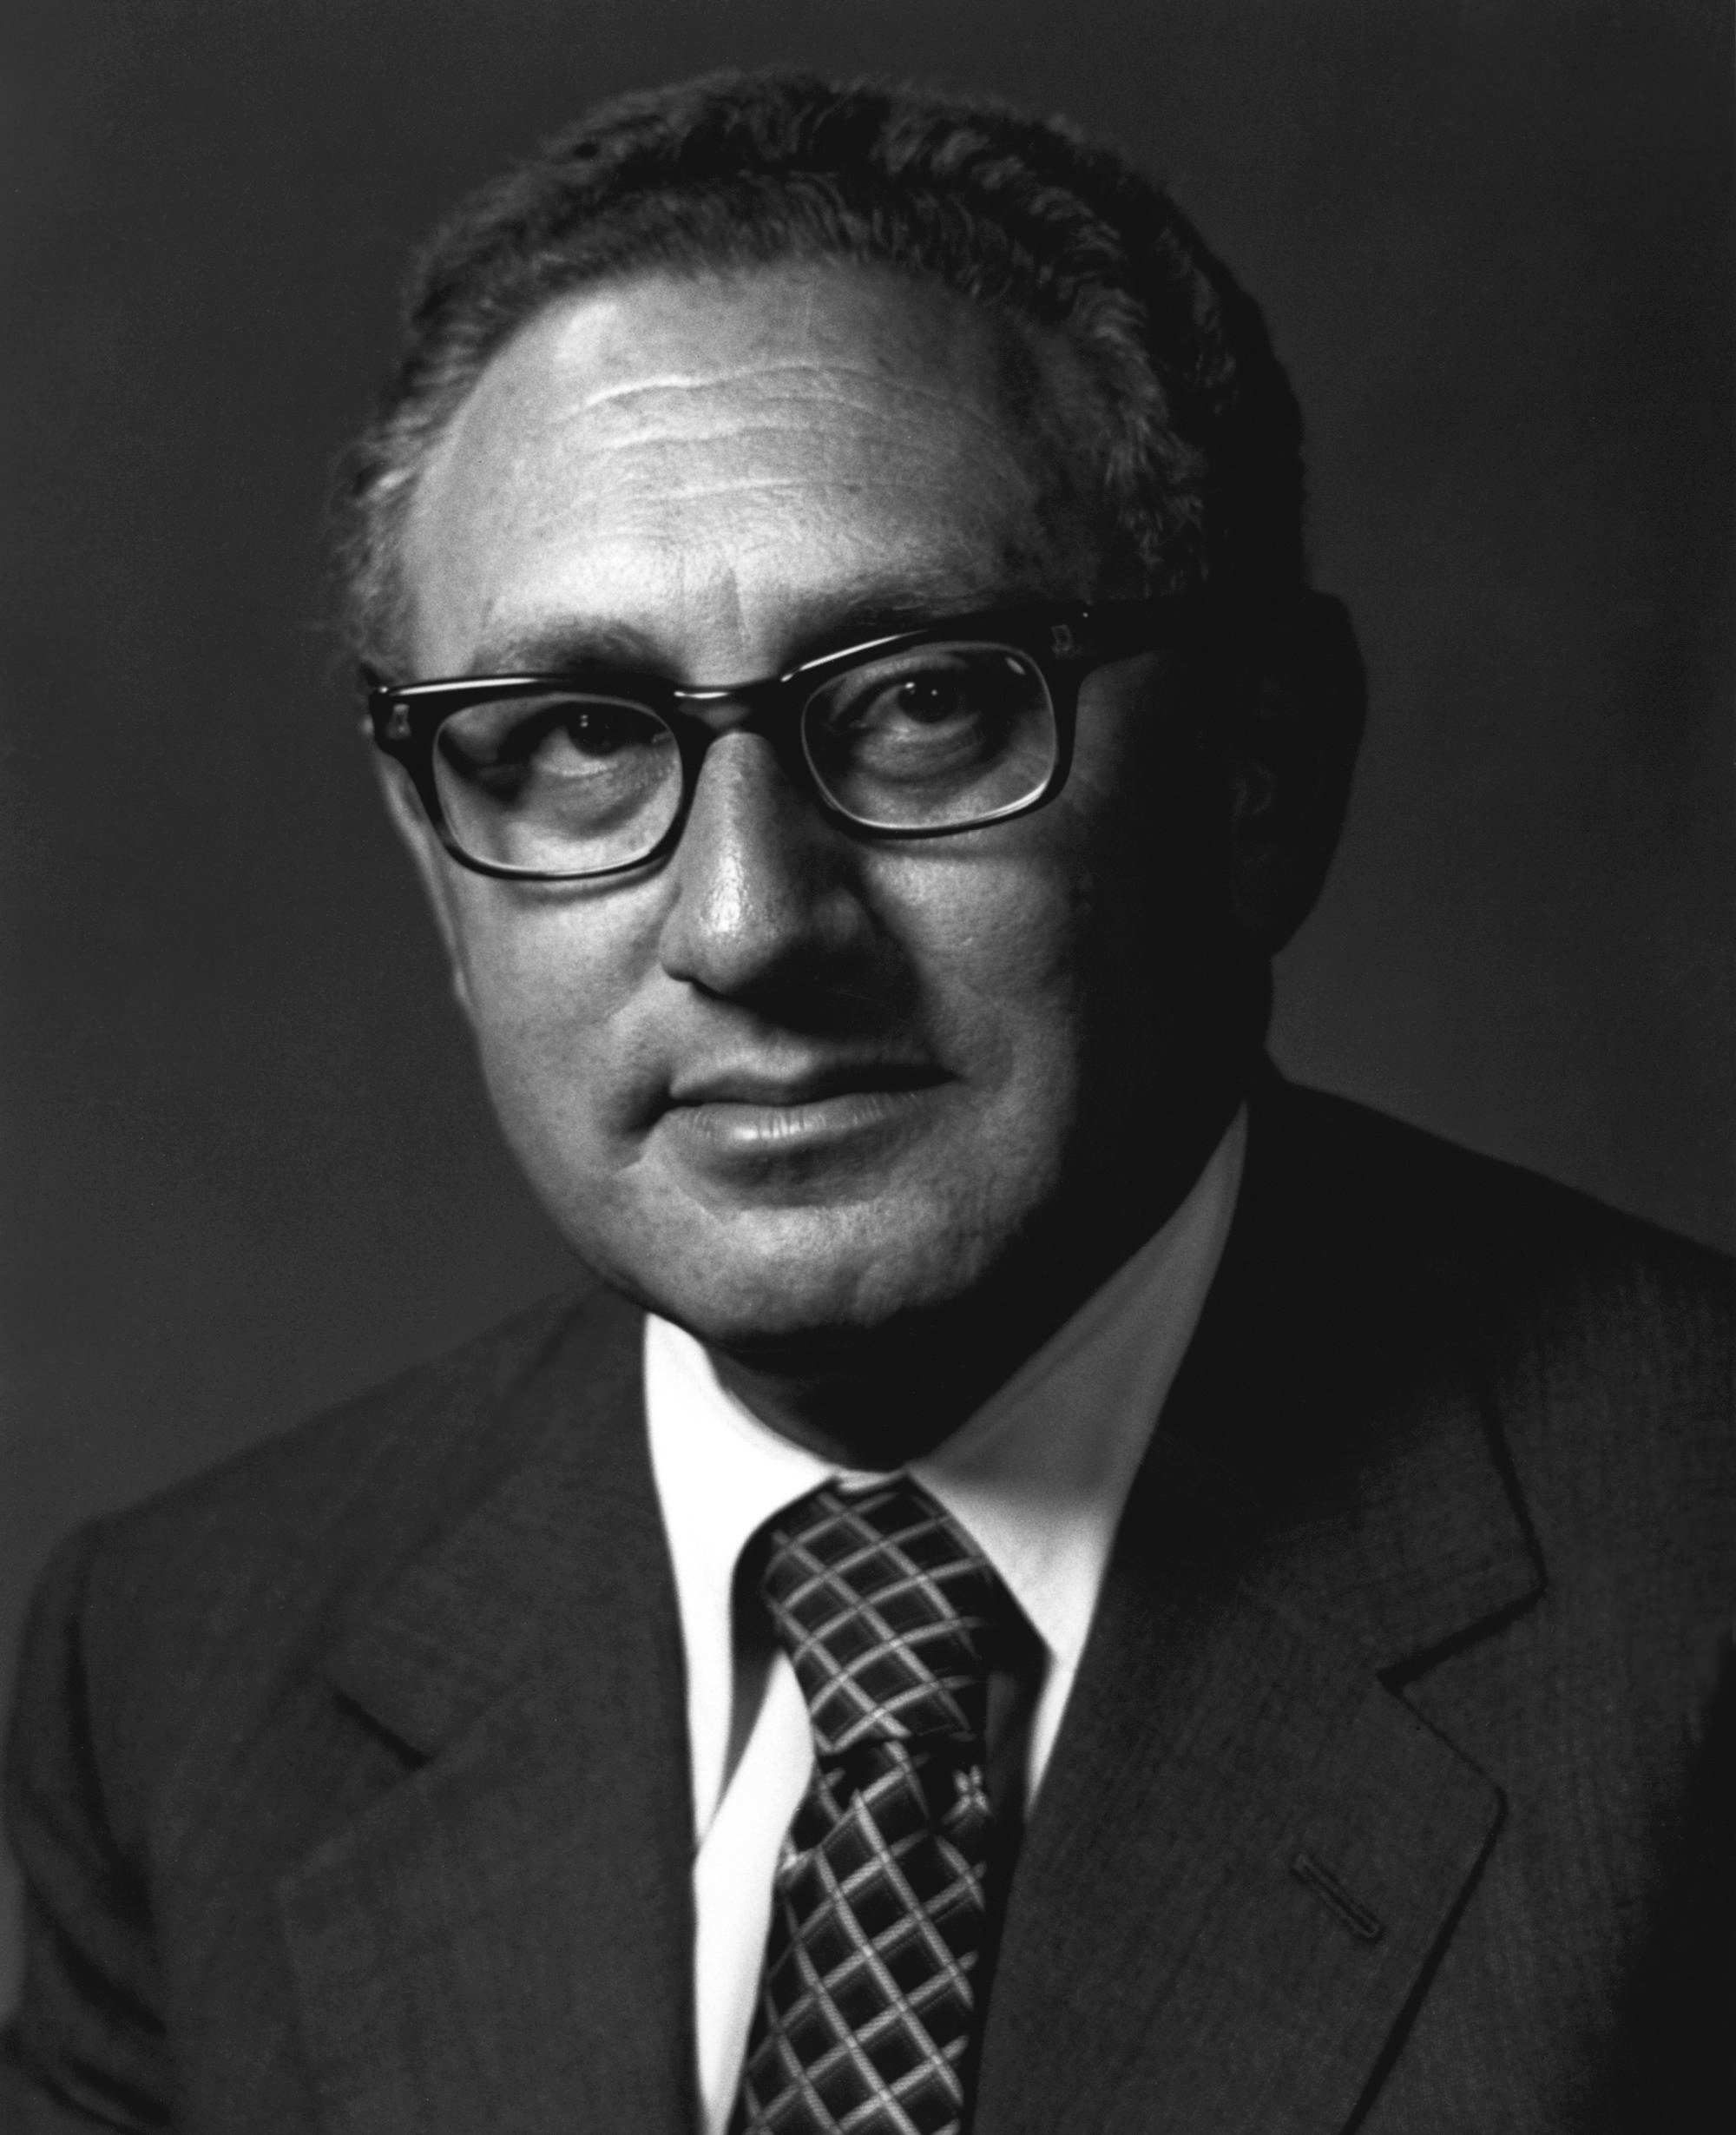 Henry Kissinger, 1923-